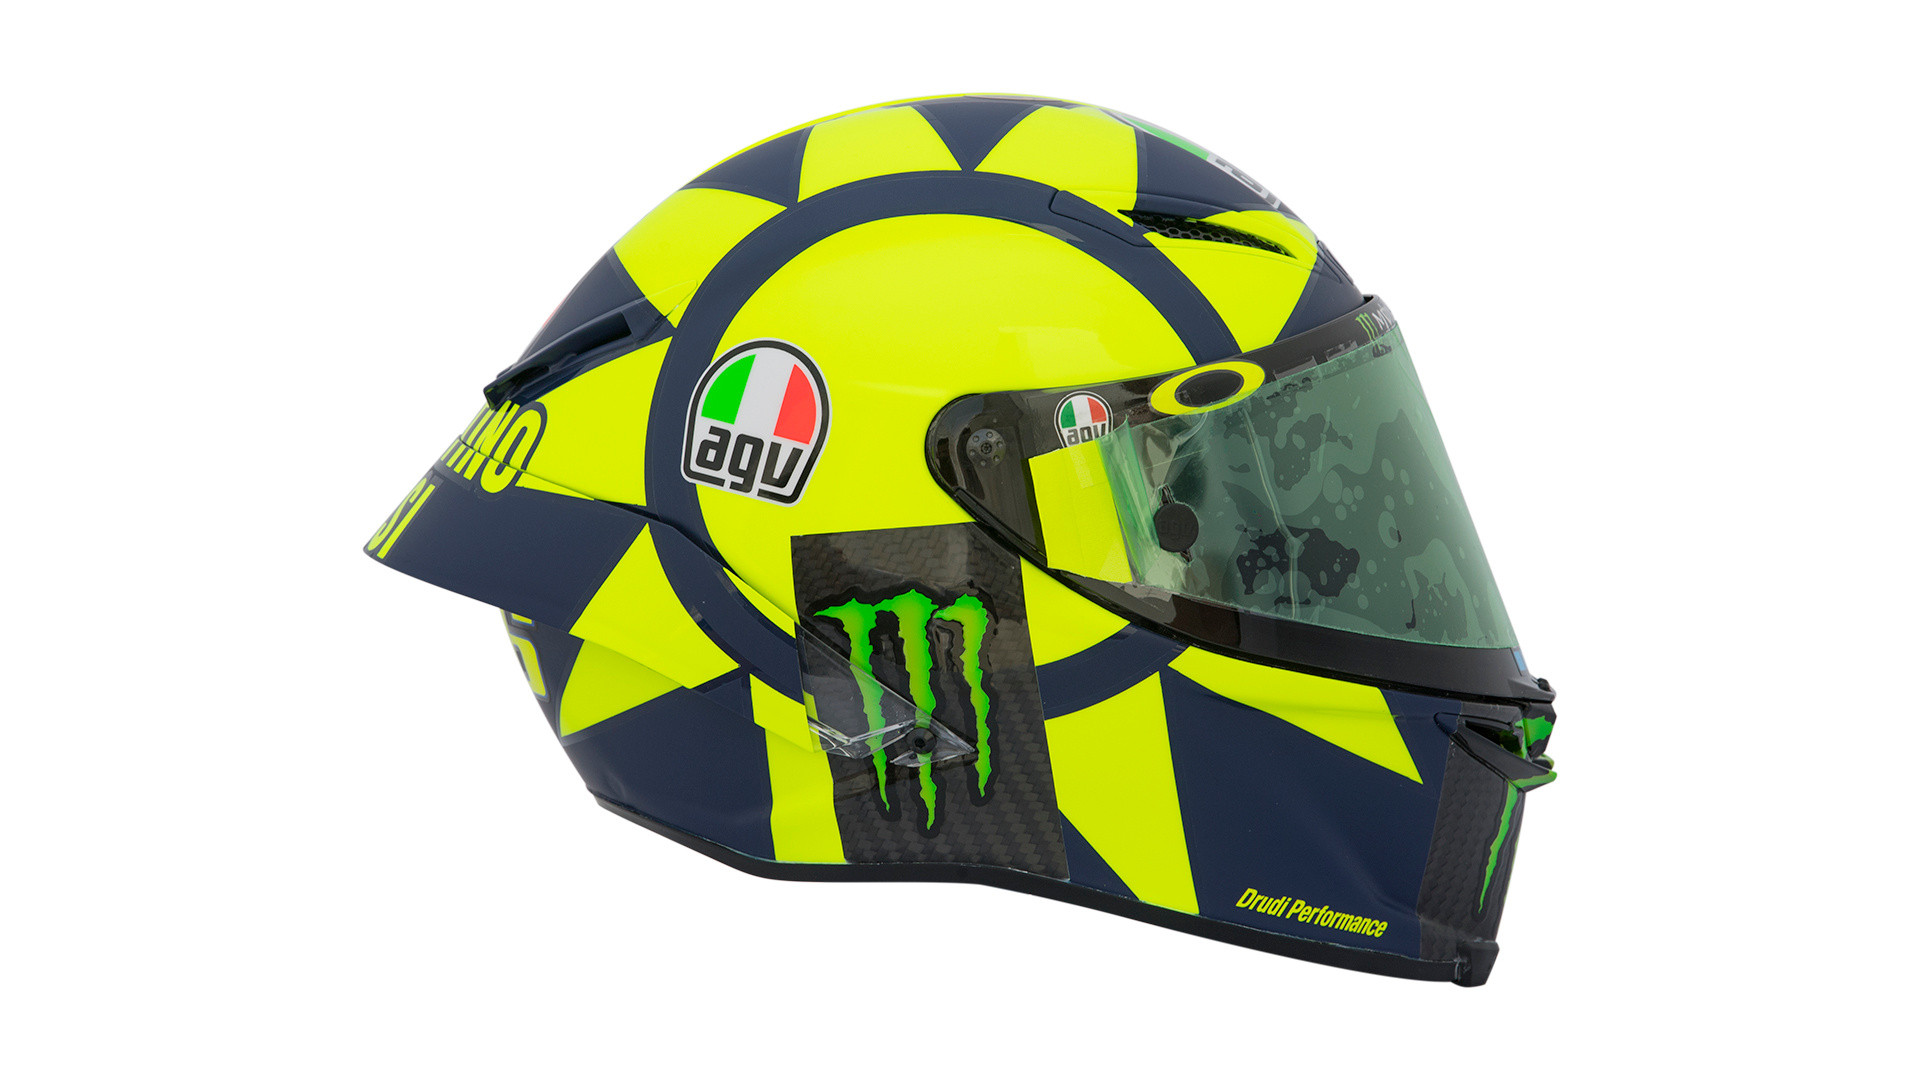 Valentino Rossi Unveils New 'Soleluna' Design on AGV Pista GP R Helmet